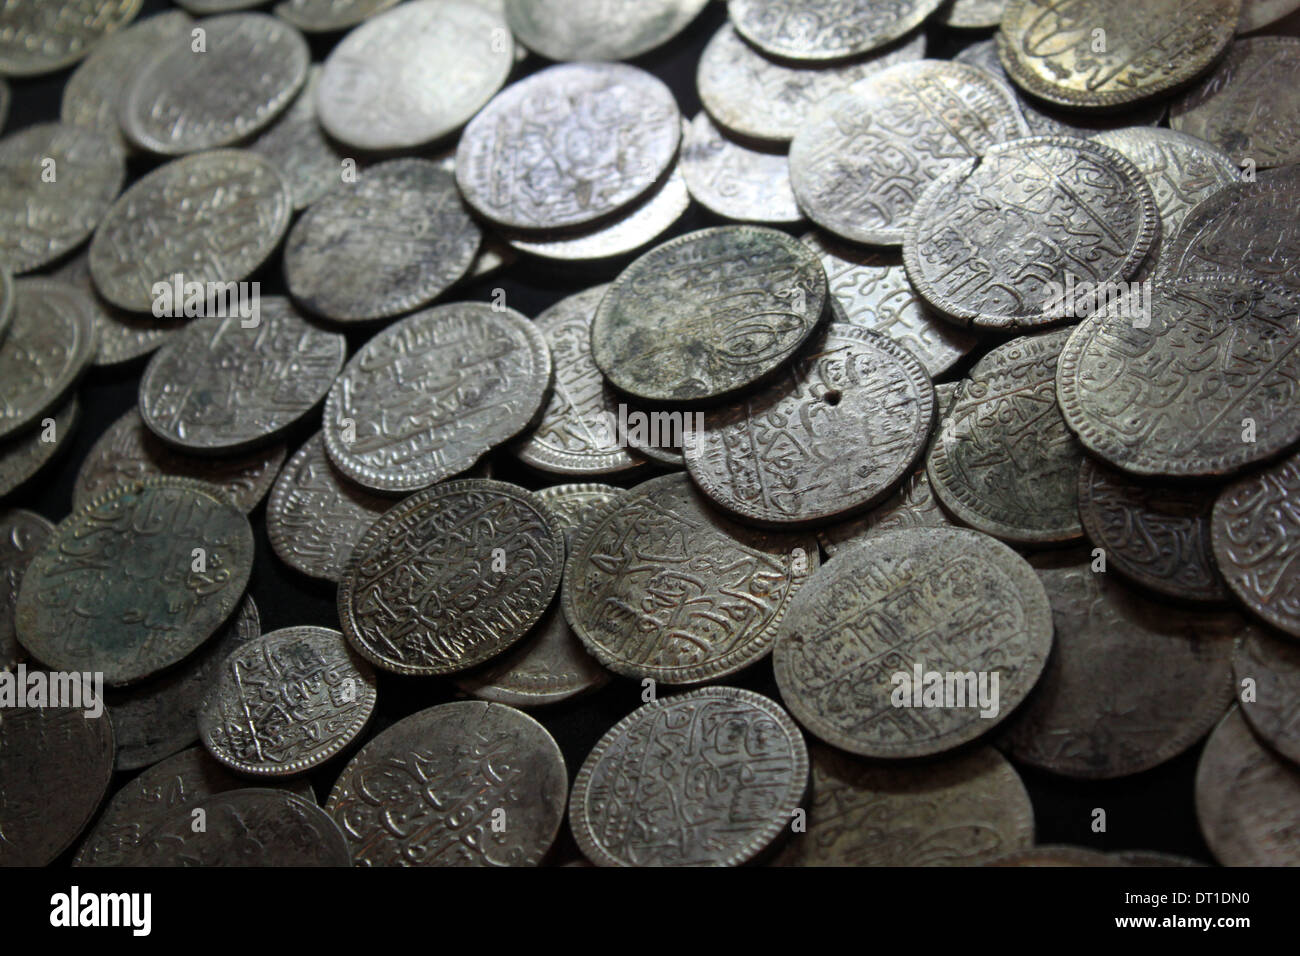 Examining antique silver coin Stock Photo - Alamy